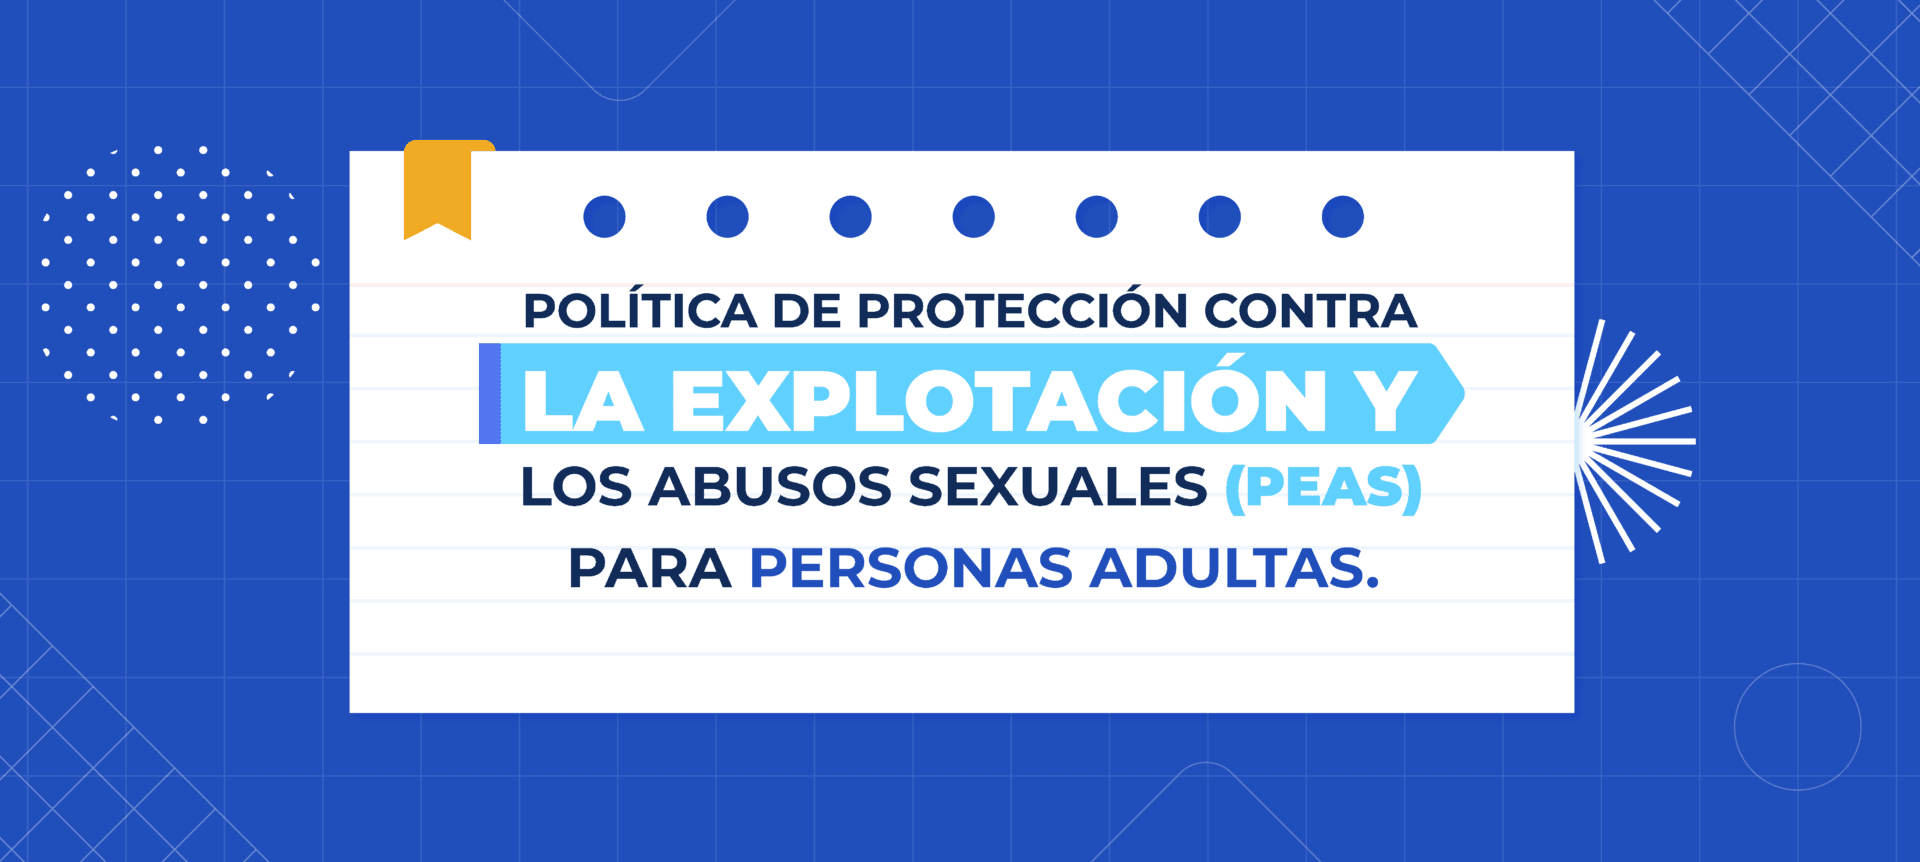 Política de protección contra la explotación y los abusos sexuales (PEAS) para personas adultas